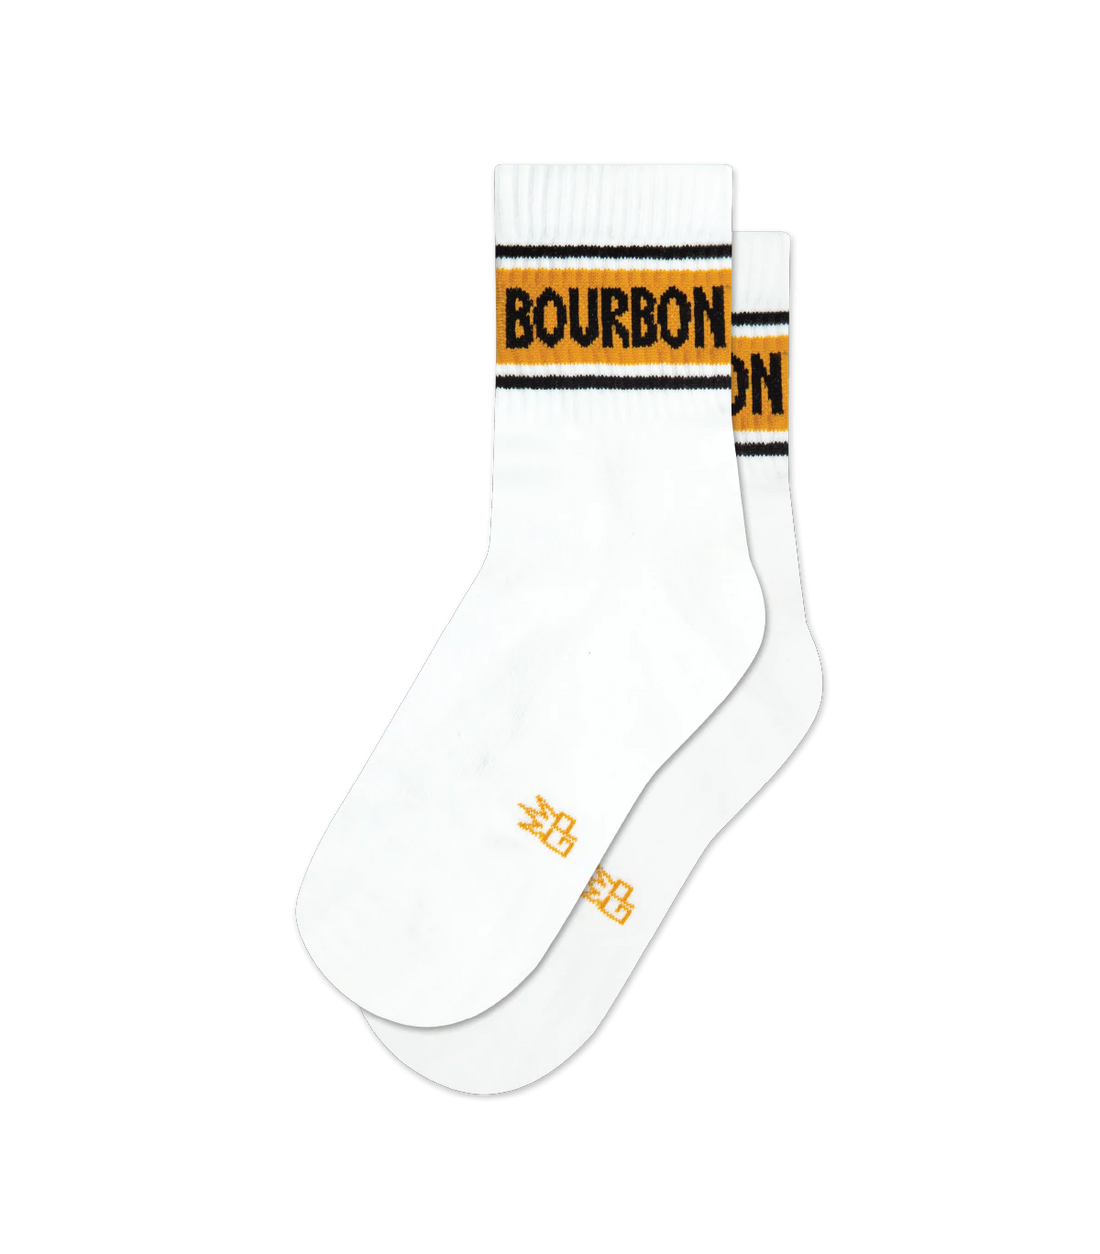 Bourbon-Short Socks